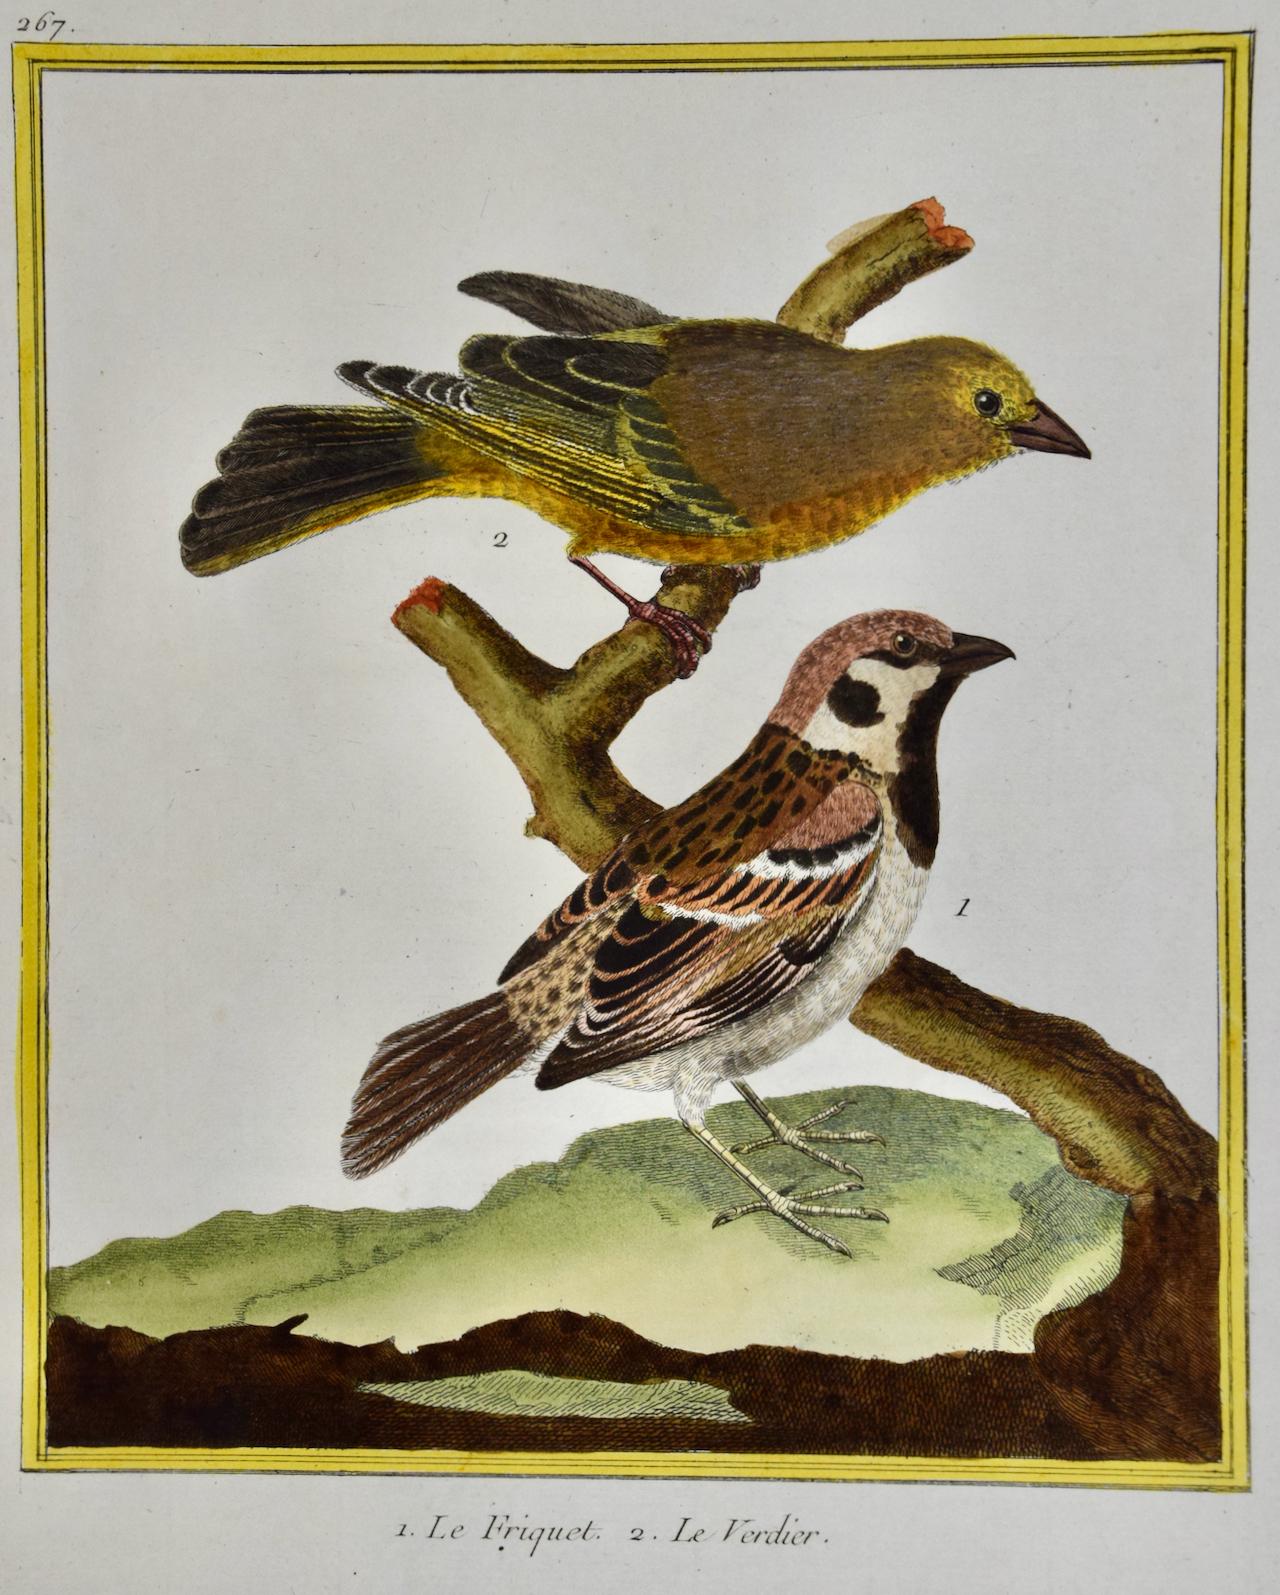 Greenfinch & A Sparrow: Ein handkolorierter Stich von Martinet aus dem 18. Jahrhundert